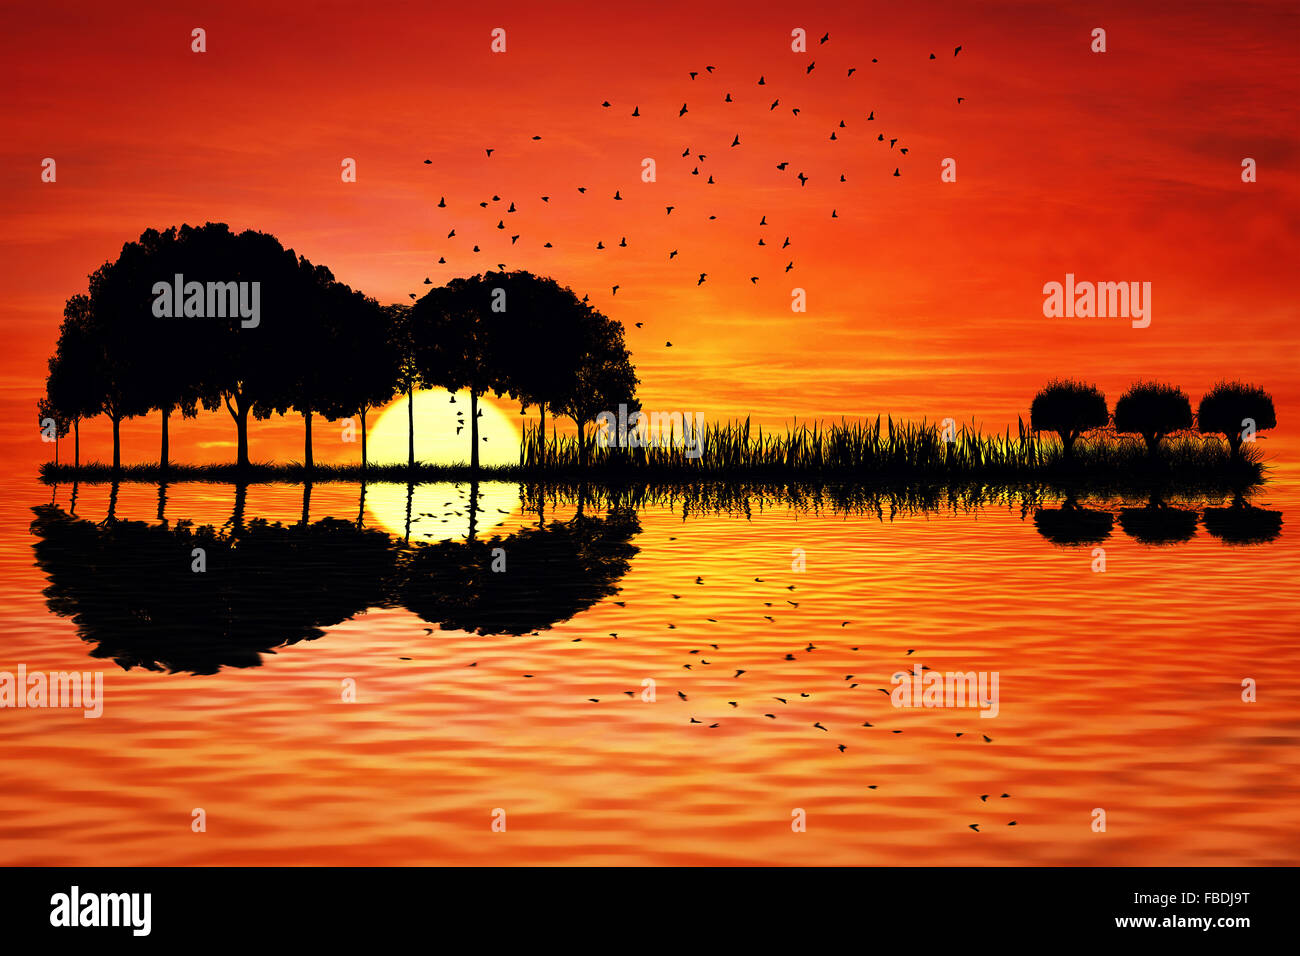 Bäume in Form einer Gitarre auf einem Sonnenuntergang Hintergrund angeordnet. Musik Insel mit einer Gitarre Spiegelung im Wasser Stockfoto